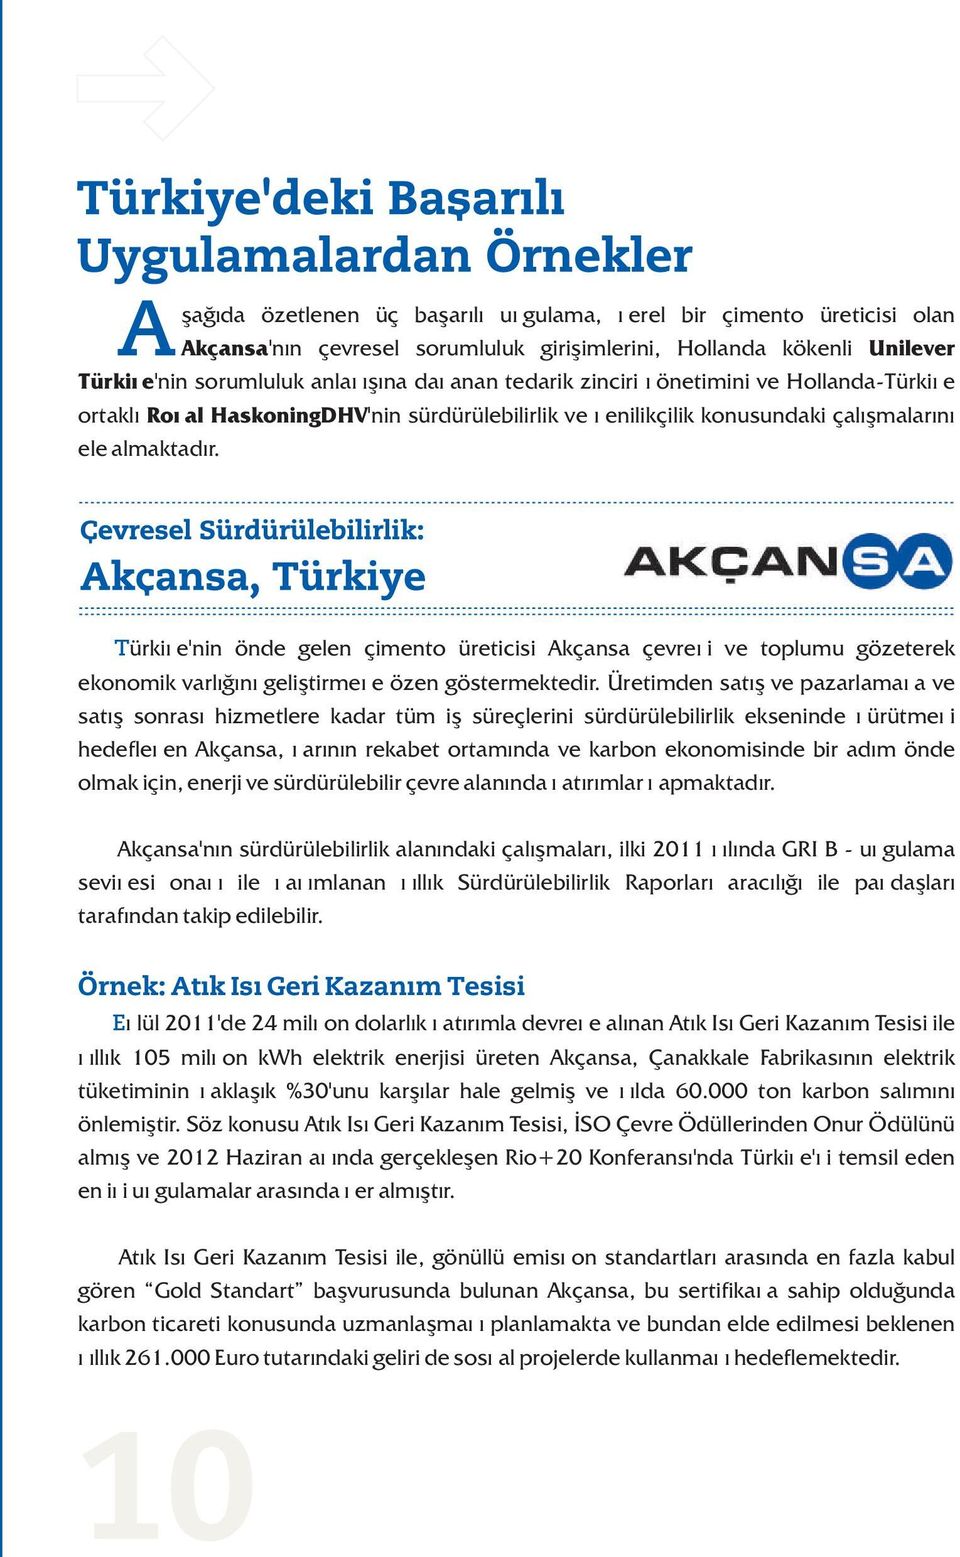 Türkiye'nin önde gelen çimento üreticisi Akçansa çevreyi ve toplumu gözeterek ekonomik varlýðýný geliþtirmeye özen göstermektedir.